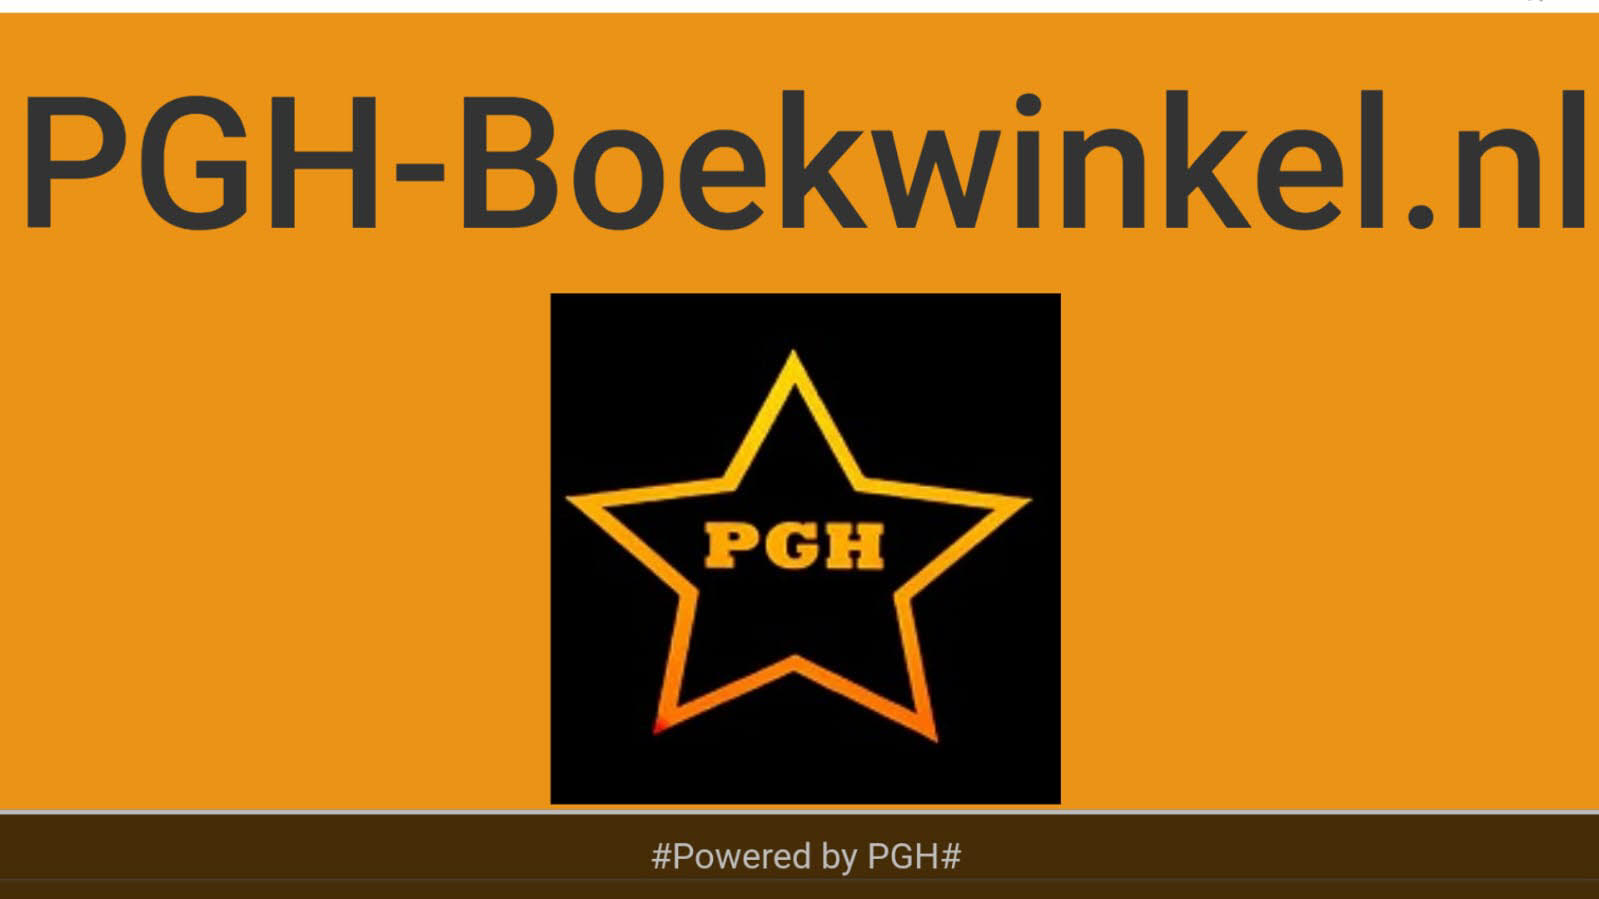 PGH-Boekwinkel.nl